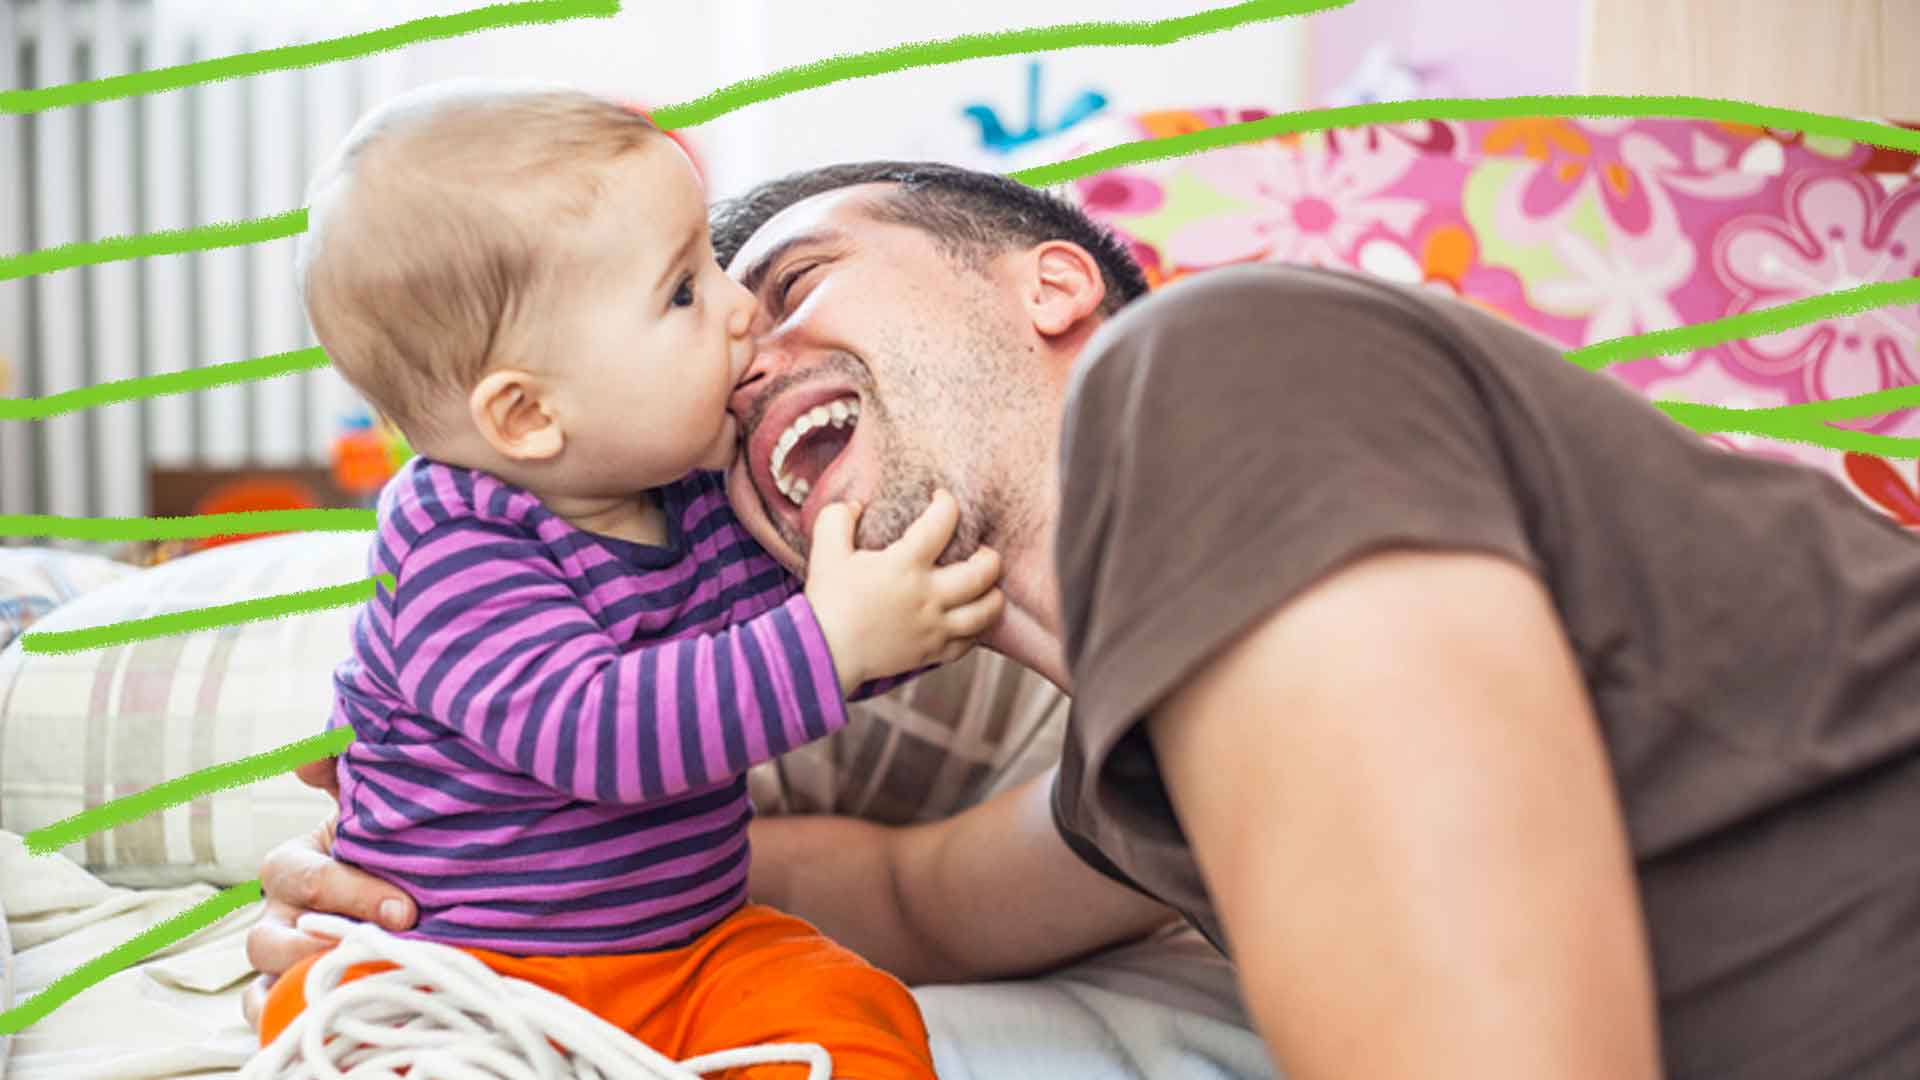 Crianças mordem: foto de um bebê, de pele clara, e um homem também de pele clara, que está ao seu lado. O bebê está mordendo o nariz do homem.